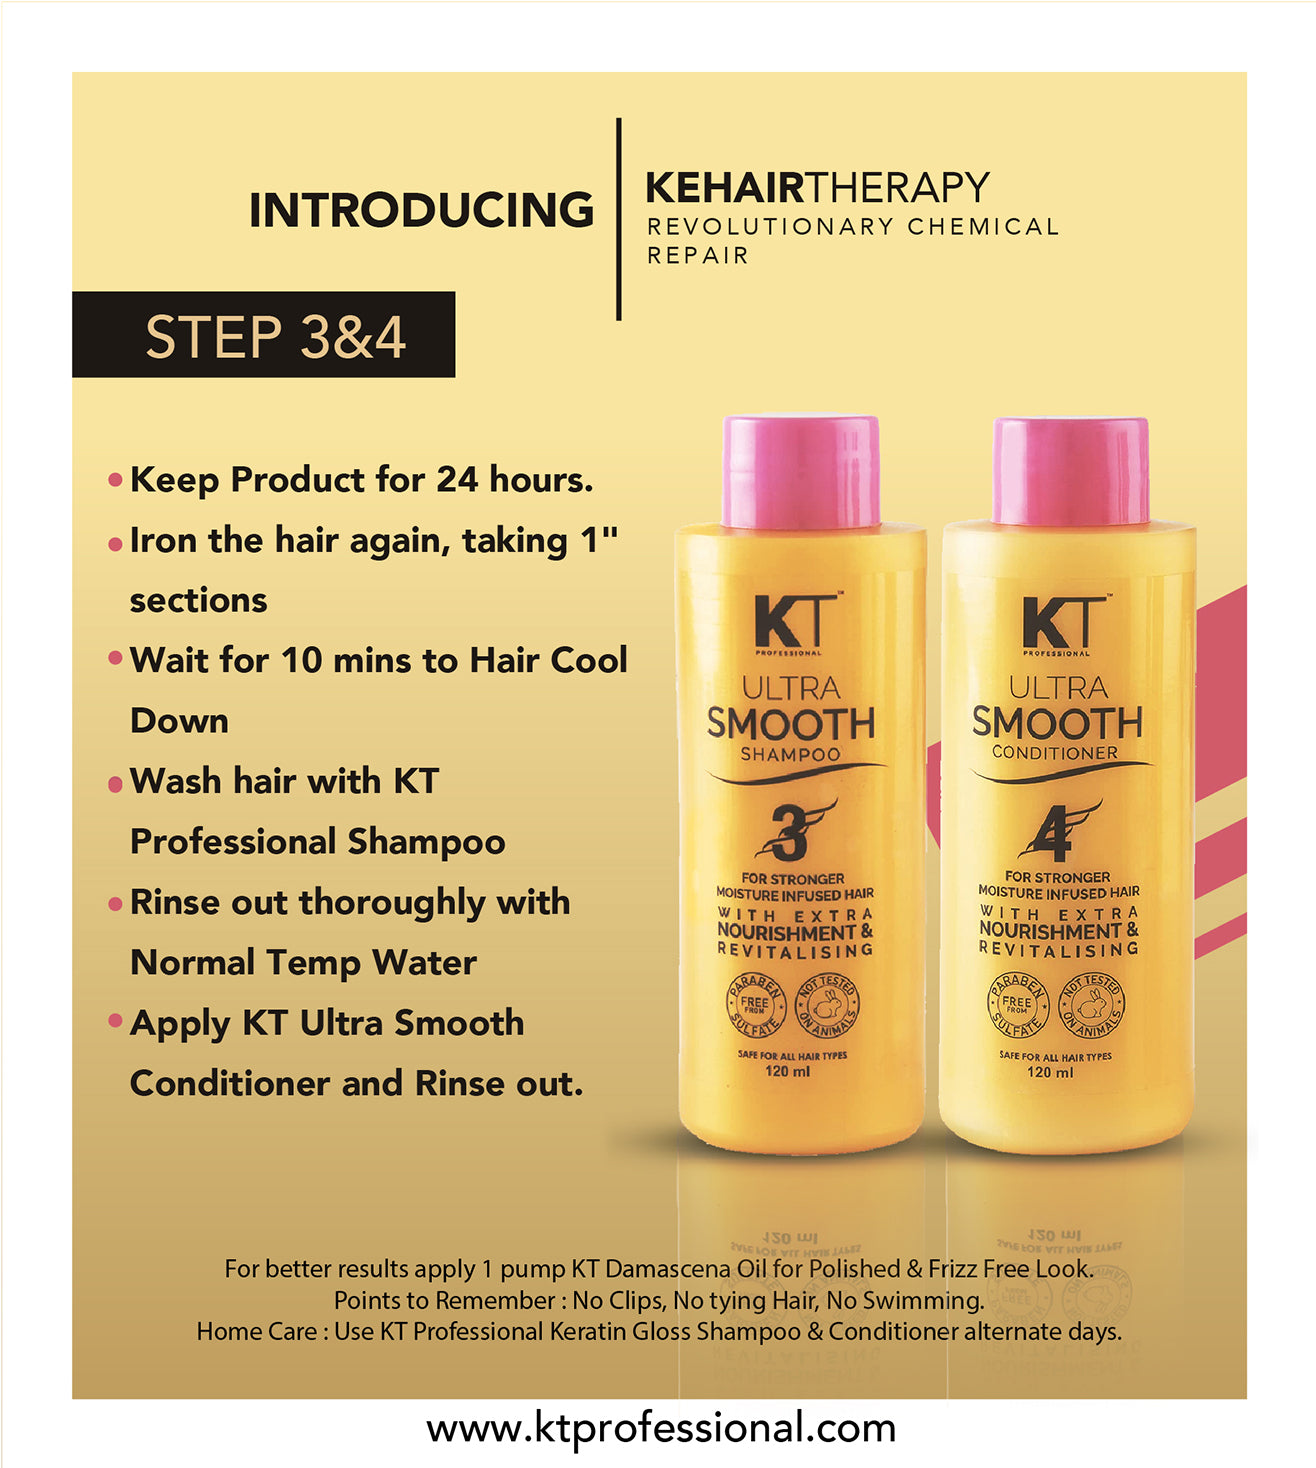 KEHAIRTHERAPY KT Professional Home Keratin FIBER BOTOX MAXX Starter Kit (480ml)